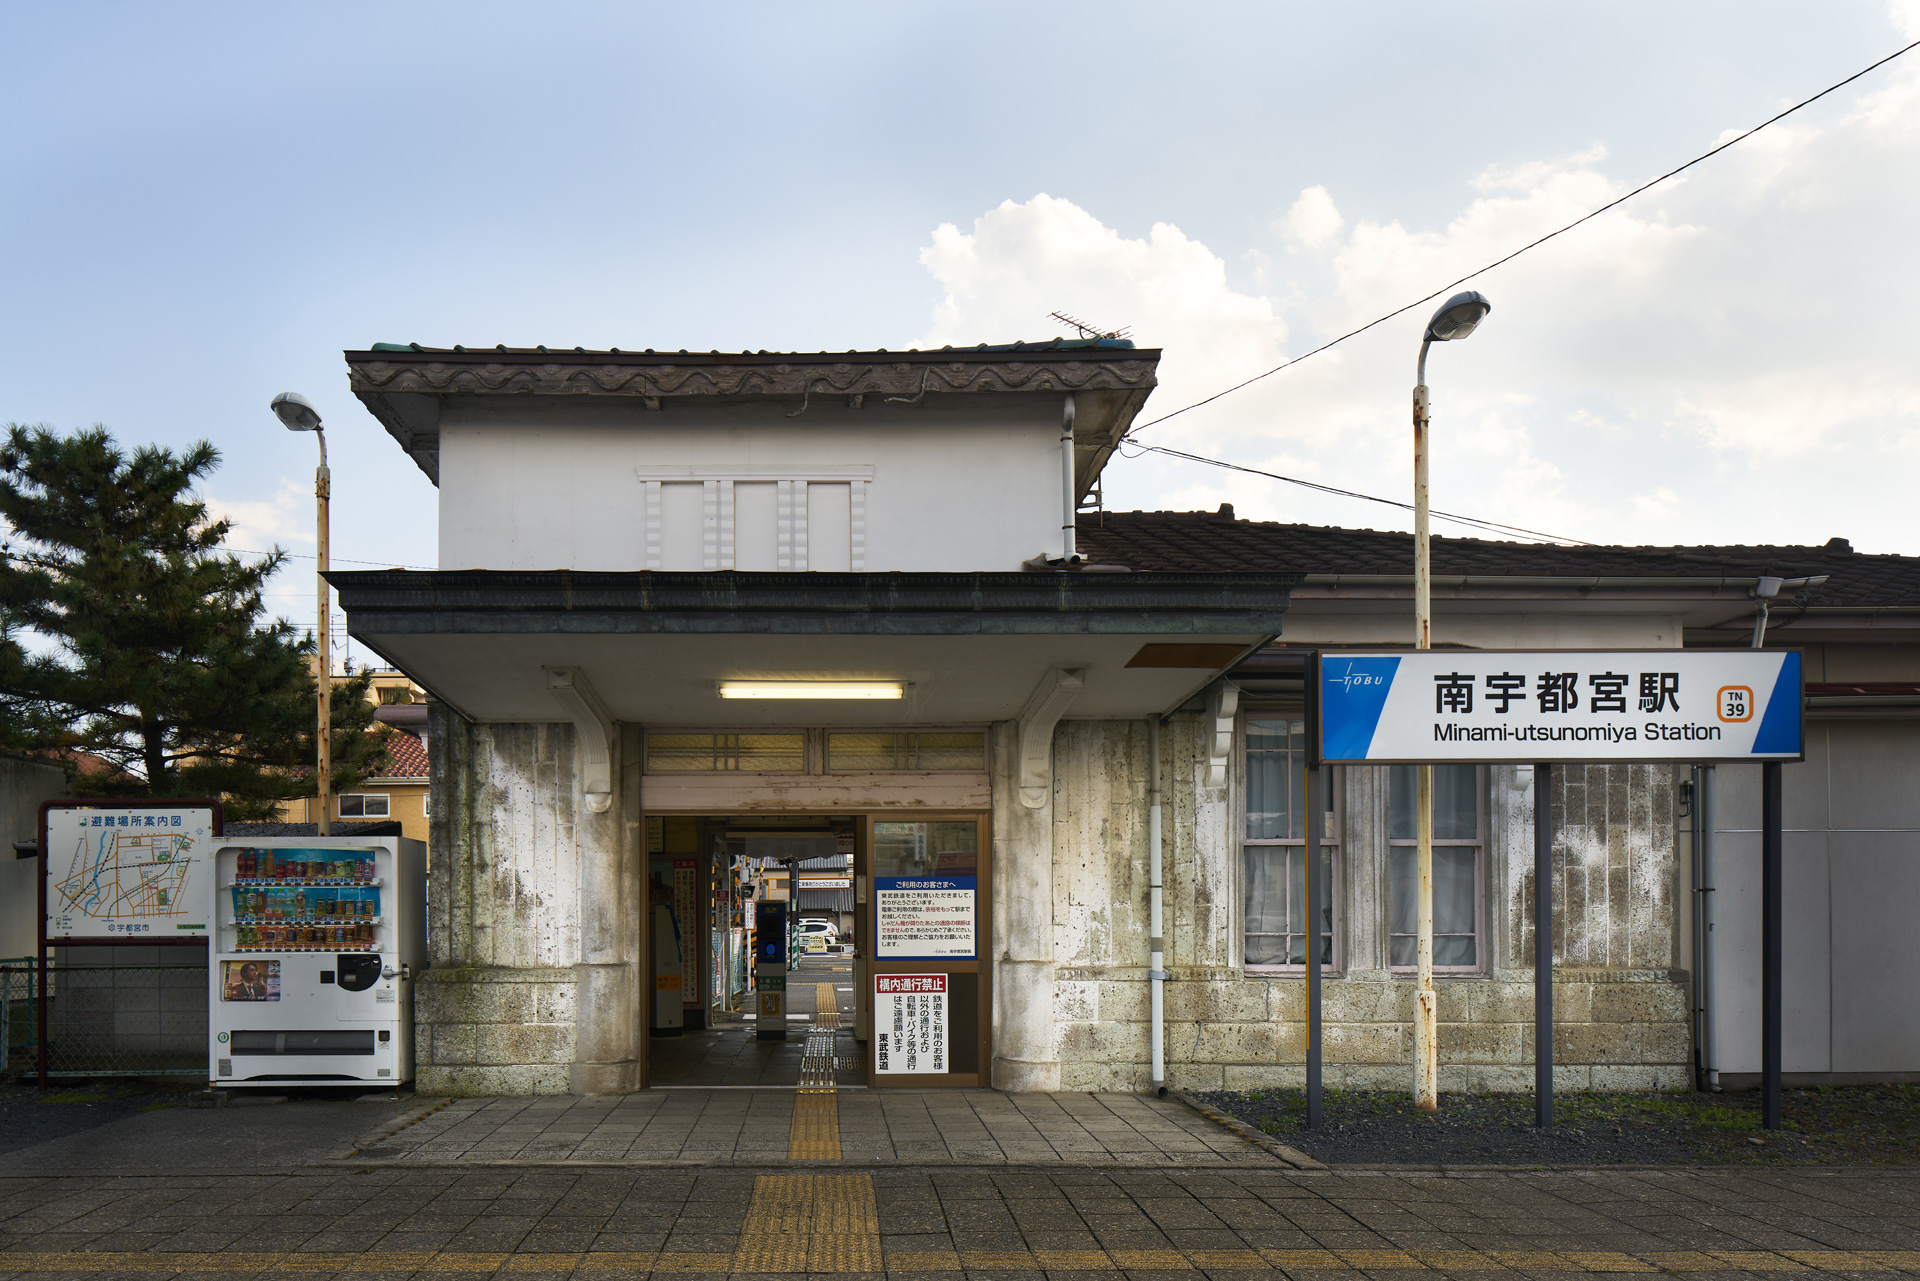 Tobu Railway Minami-utsunomiya Station